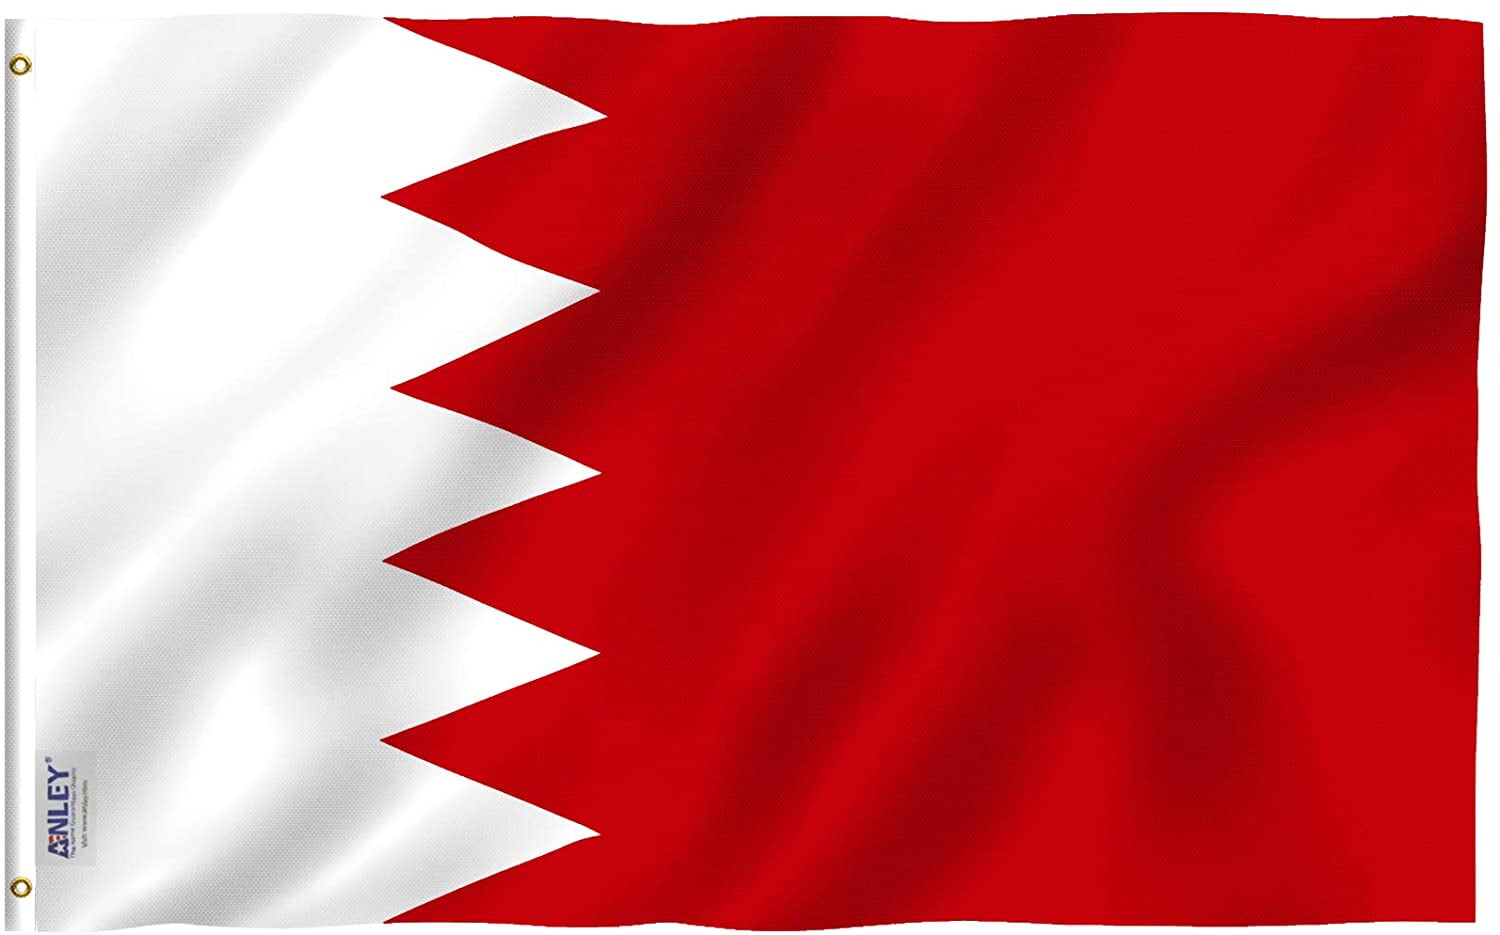 BAHRAIN 3X5' FLAG NEW 3'X5' 3 X 5 FEET BIG BAHRAIN FLAG 